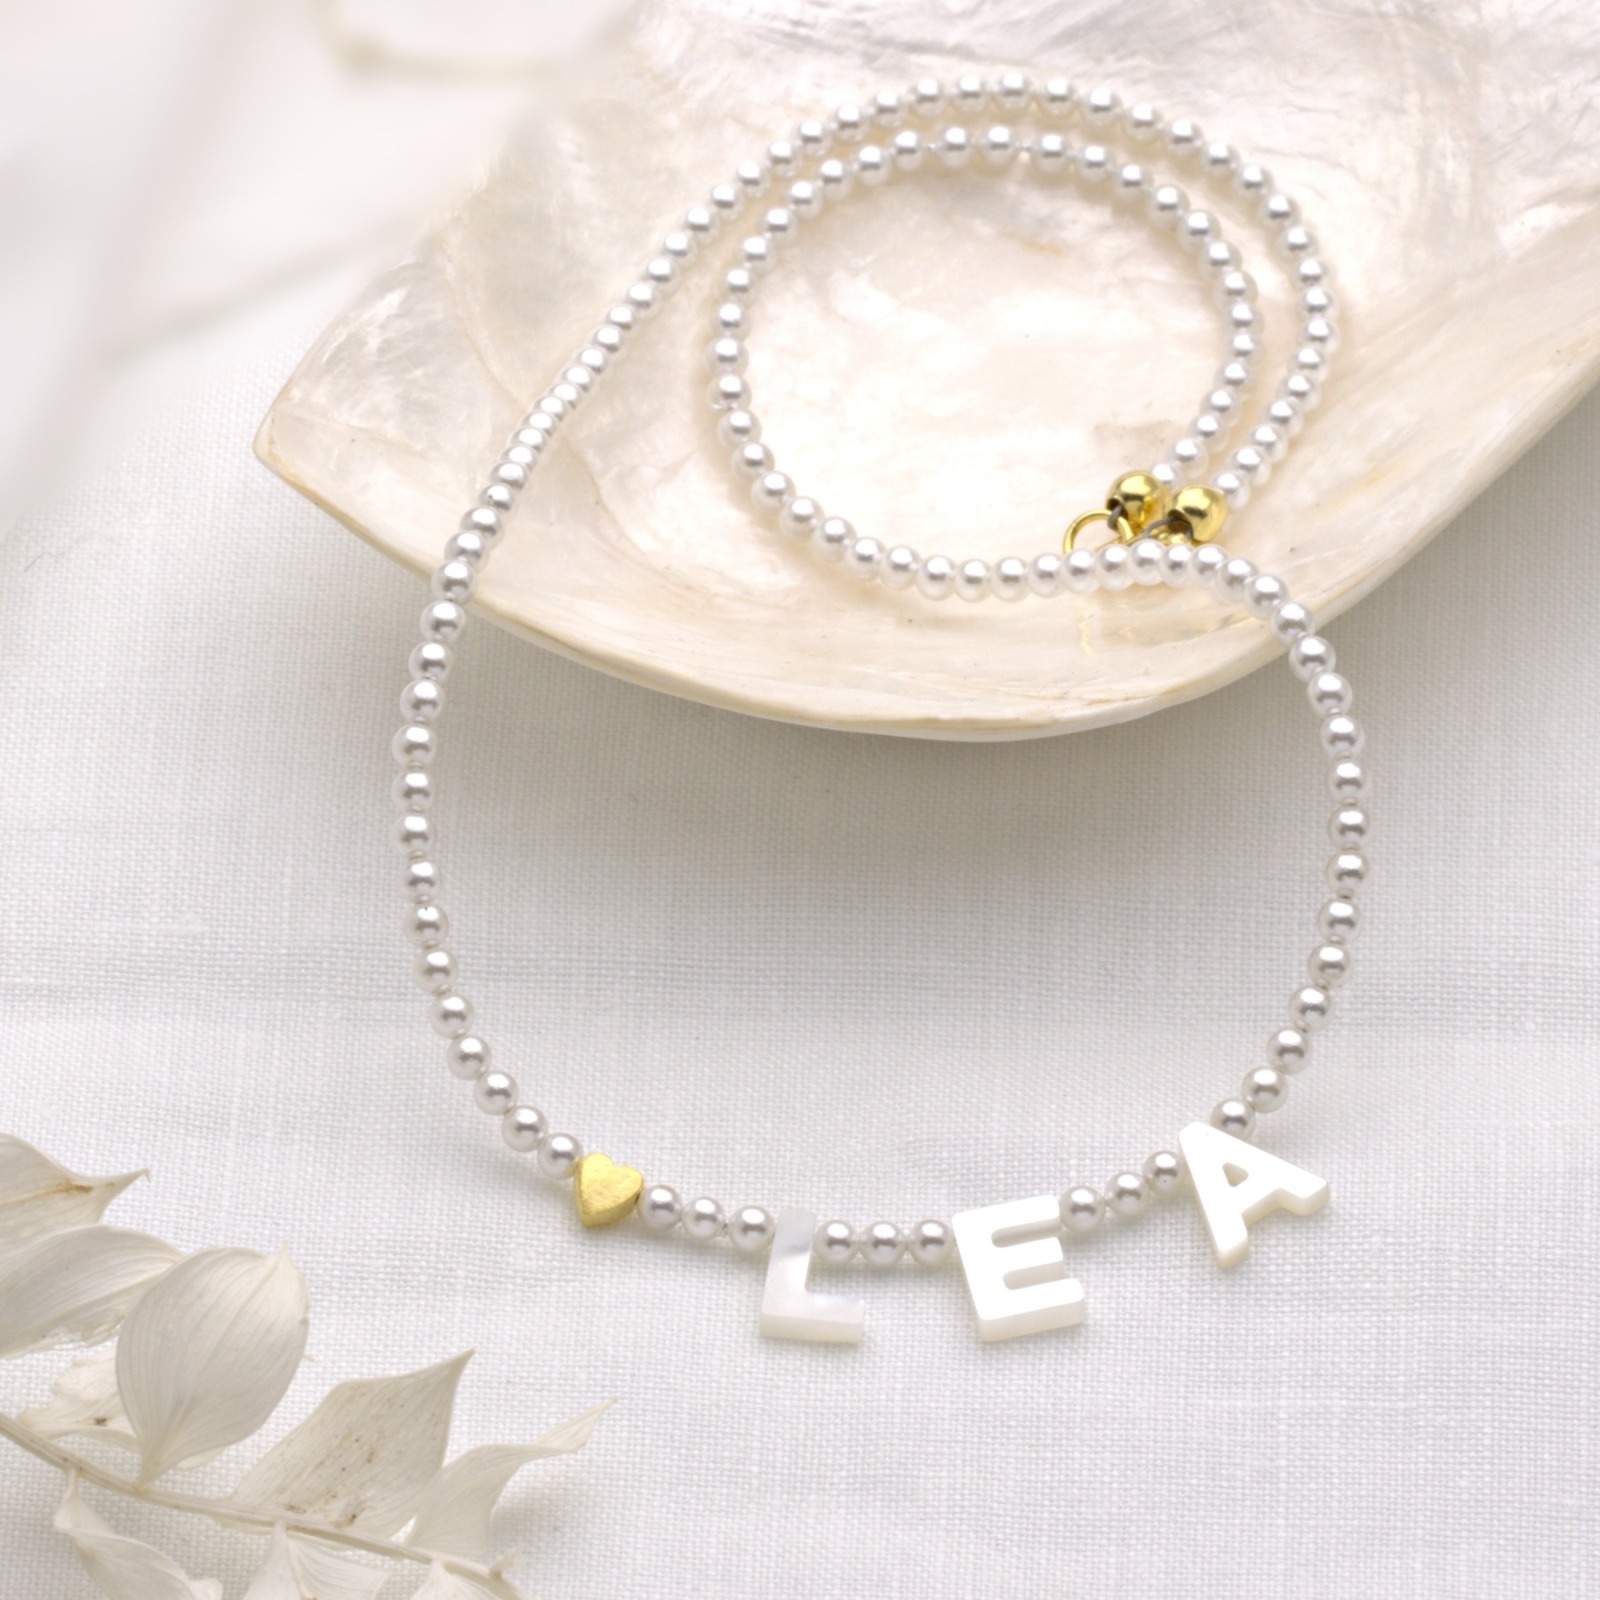 Zarte personalisierte Namens-Halskette echte Perlmutt Buchstaben, Perlenkette aus Muschelkernperlen,